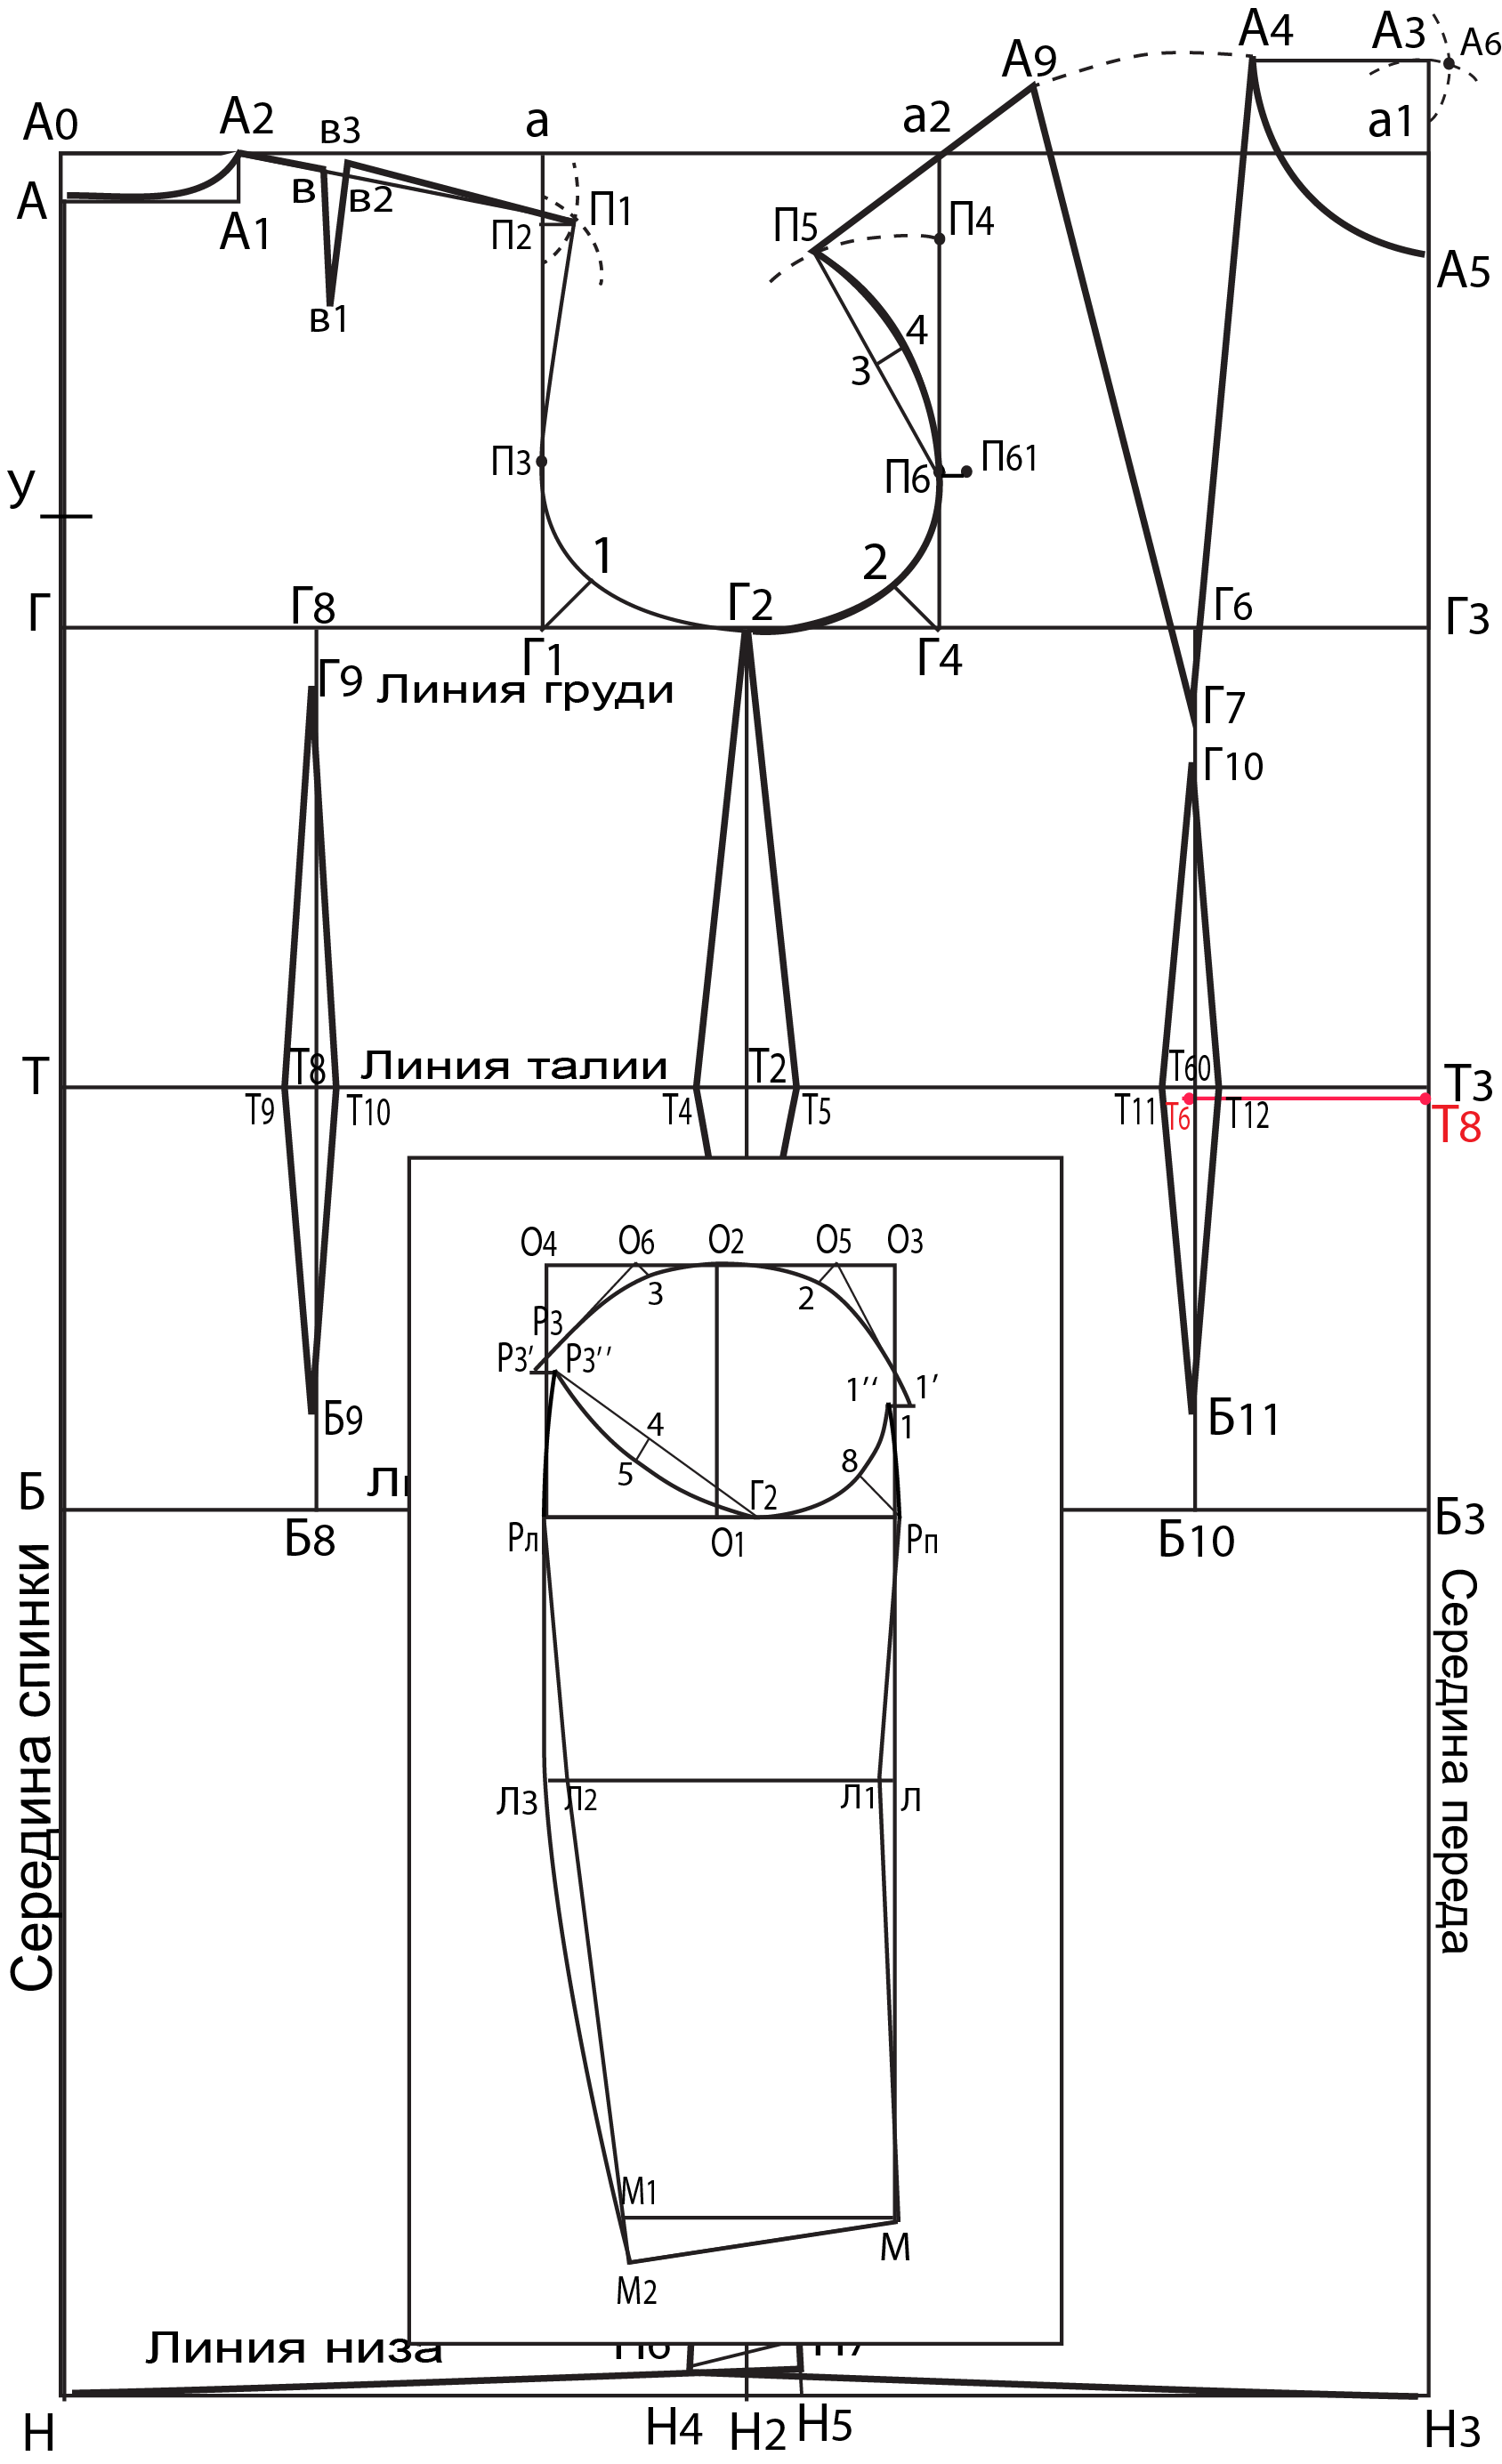 Выкройка основа, термины, определения, замеры, построение чертежа - клуб рукоделия три иголки